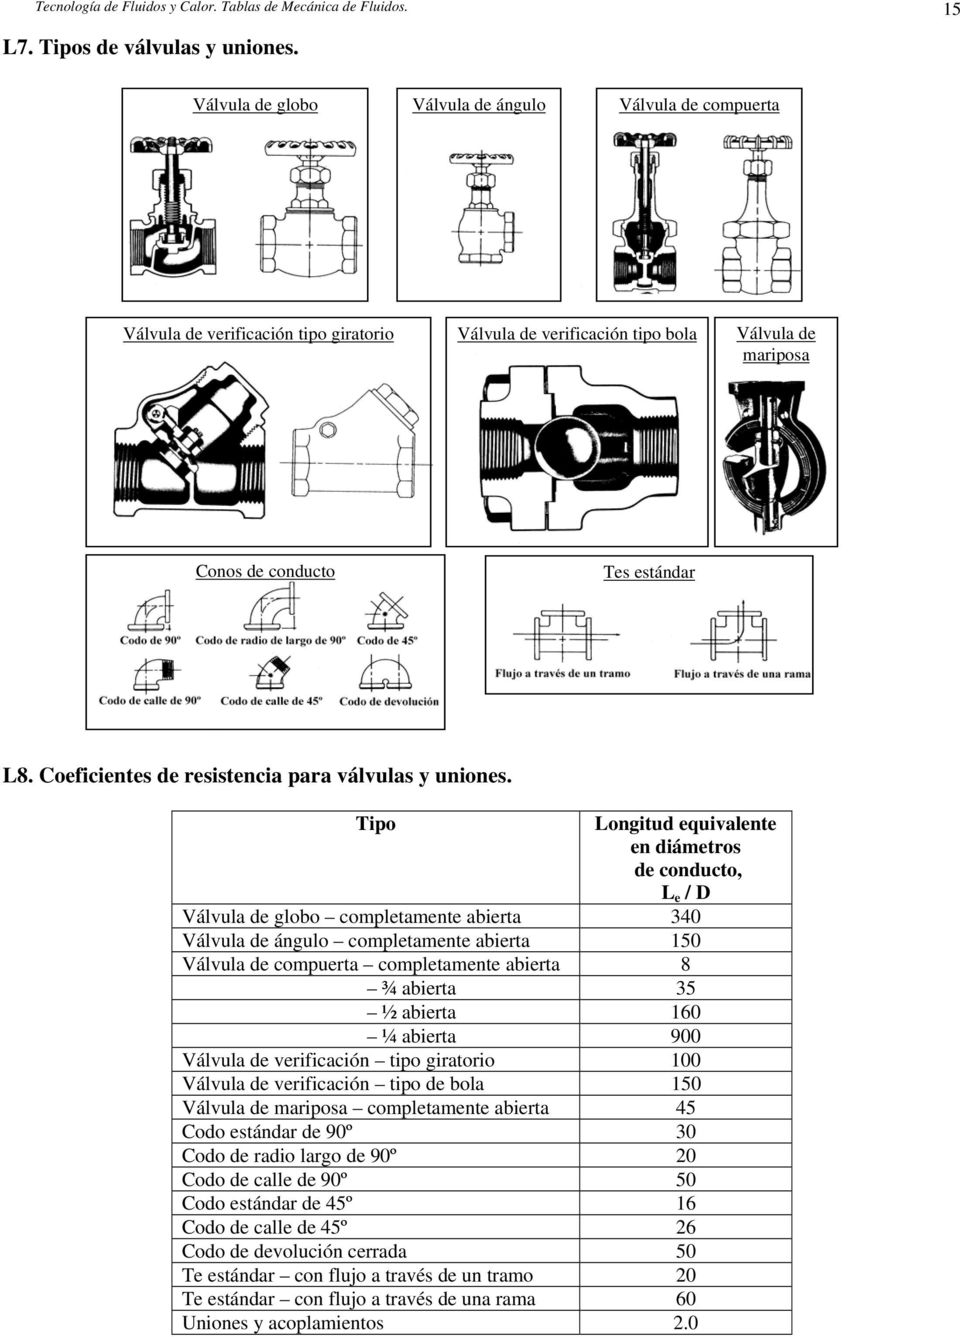 Coeficientes de resistencia para válvulas y uniones.